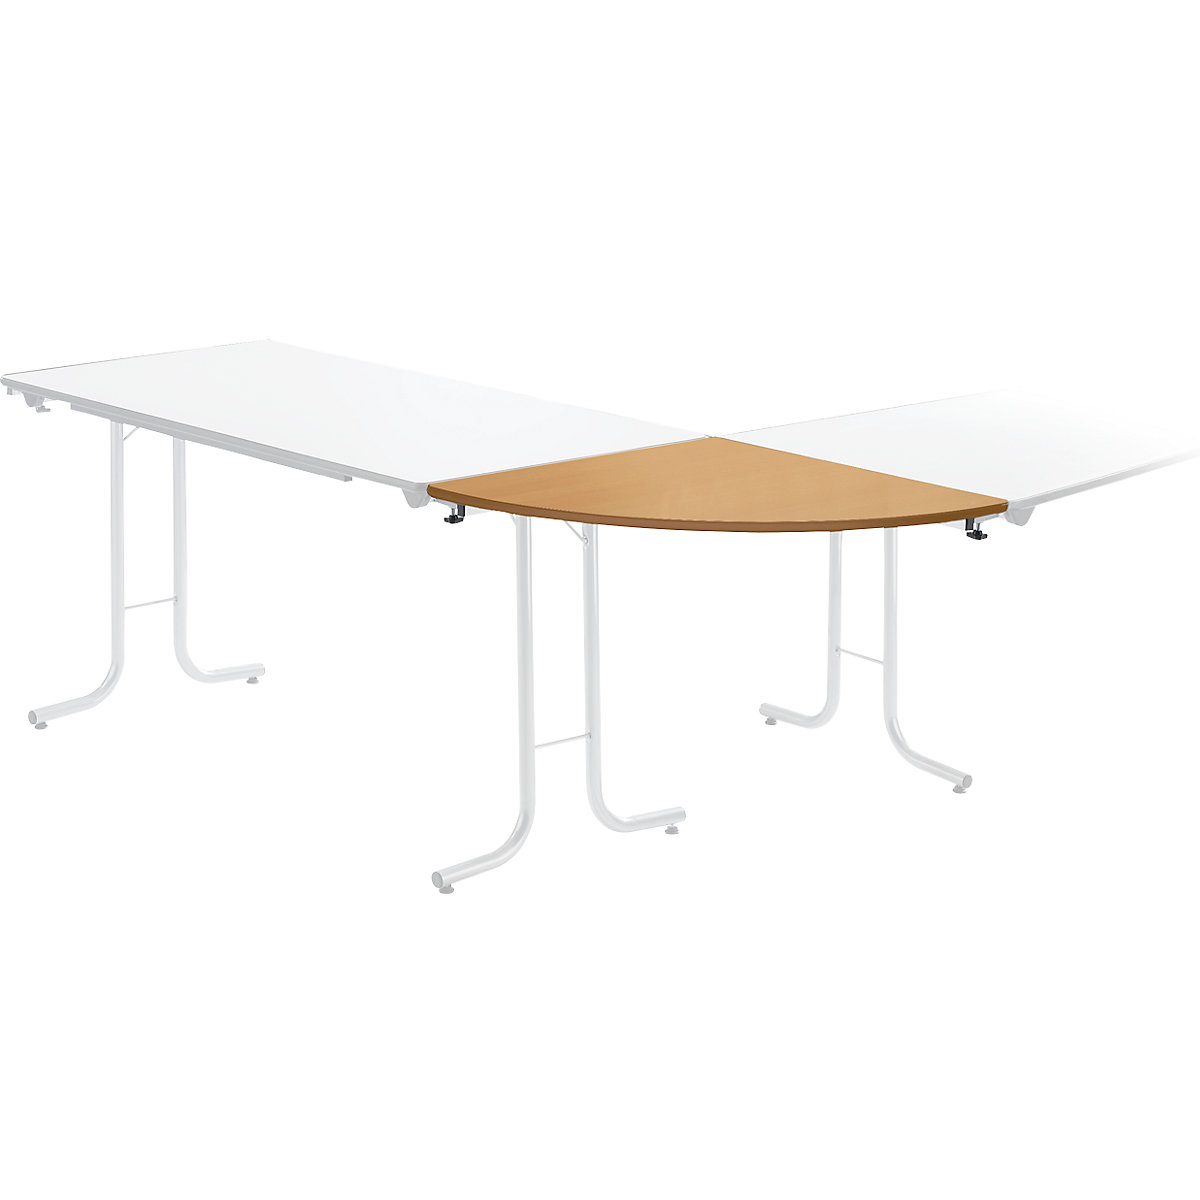 Retour pour table pliante, plateau en forme de quart de cercle, 700 x 700 mm, piétement coloris aluminium, plateau façon hêtre-5